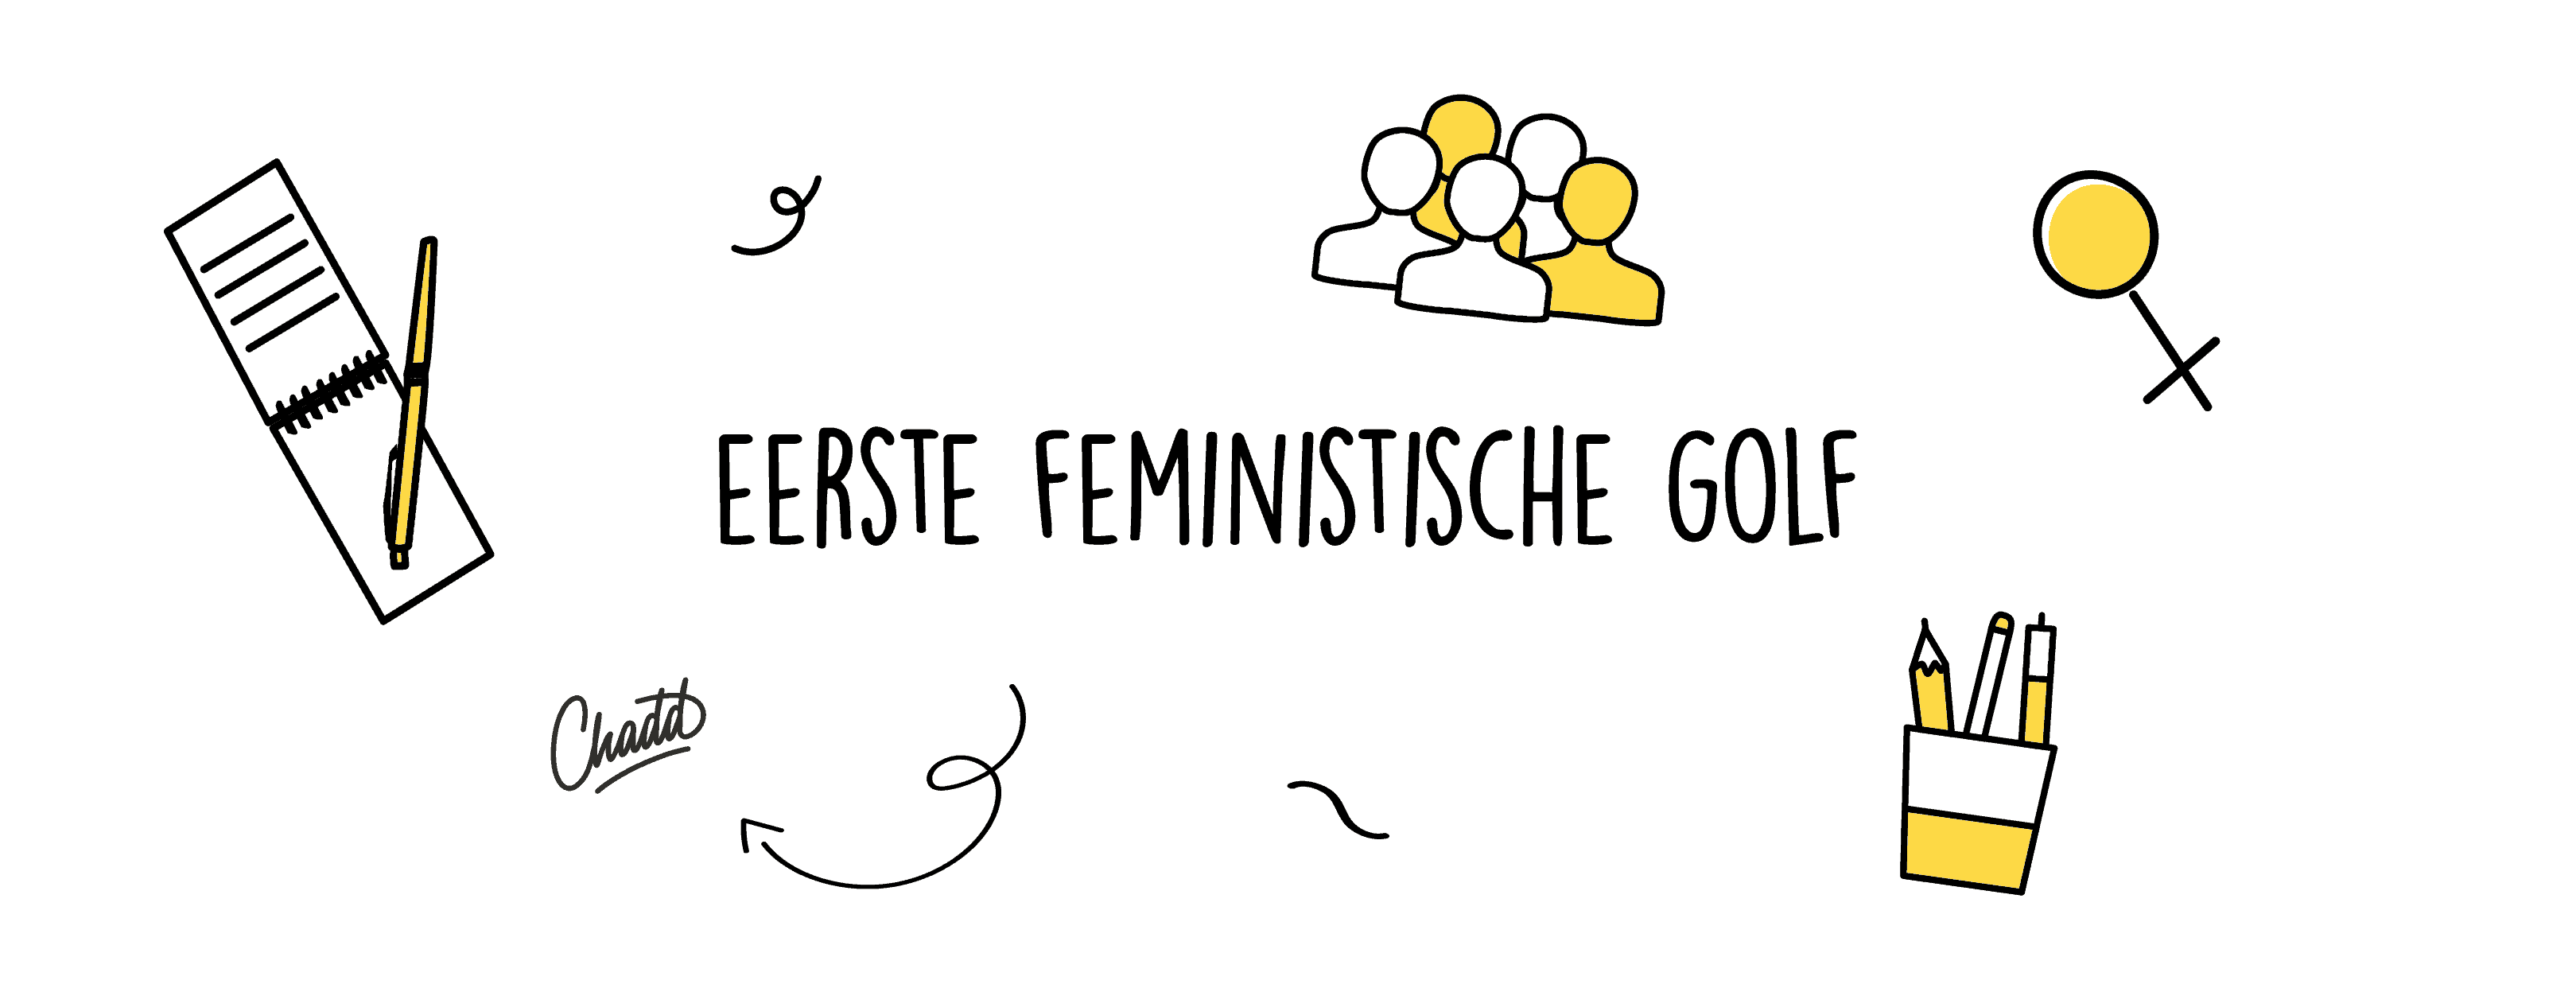 Eerste Feministische Golf